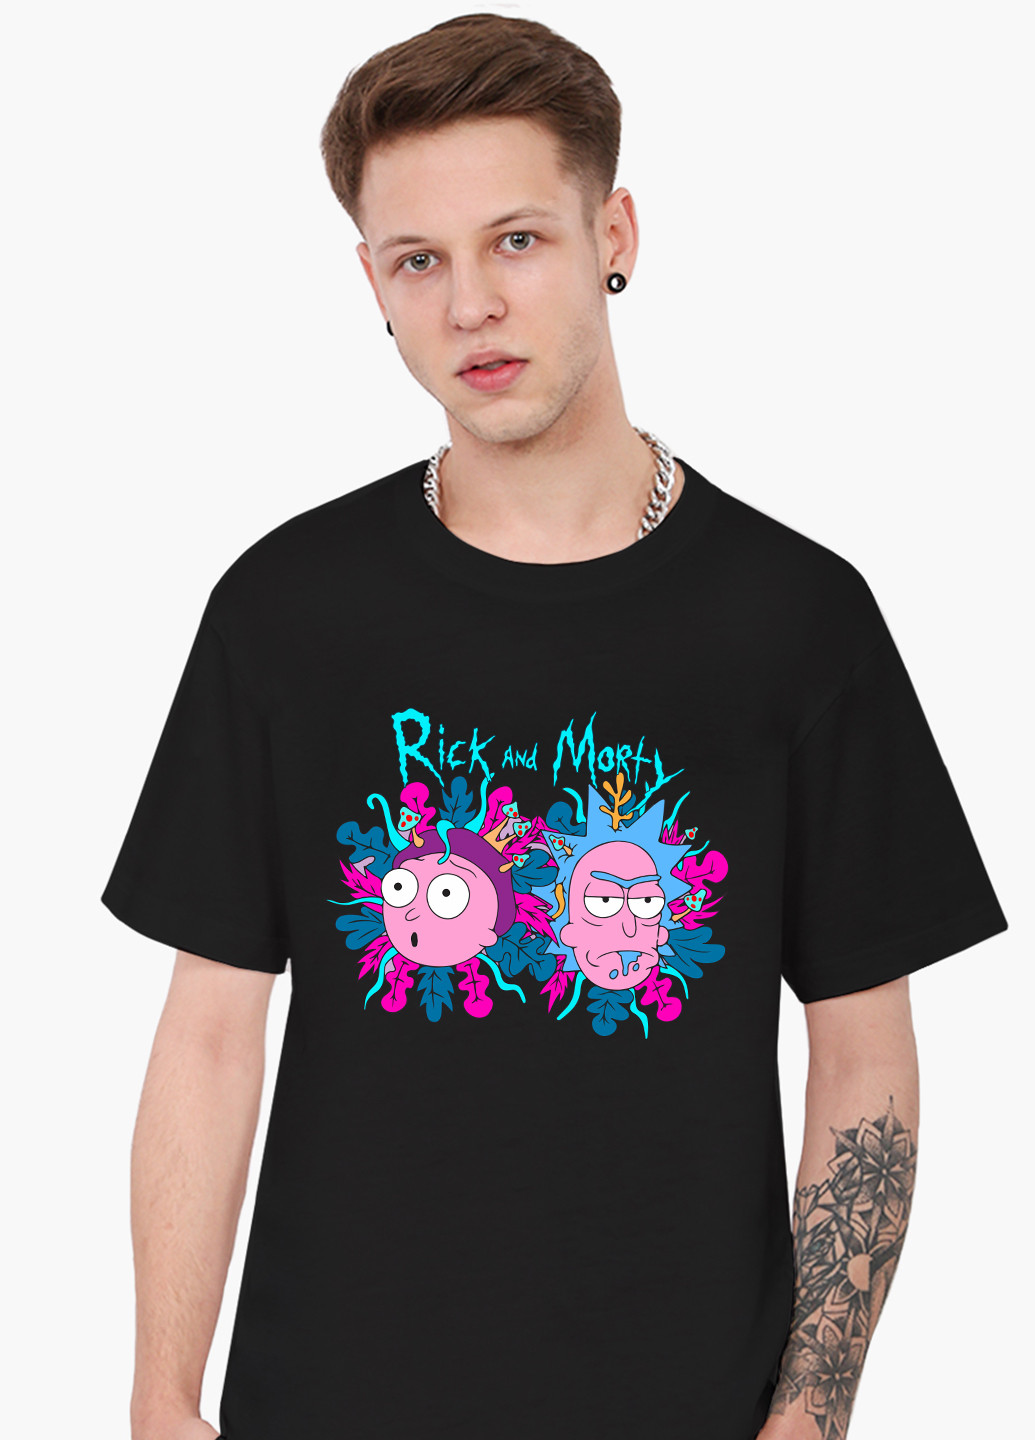 Черная футболка мужская рик санчез рик и морти (rick sanchez rick and morty) (9223-2947-1) xxl MobiPrint